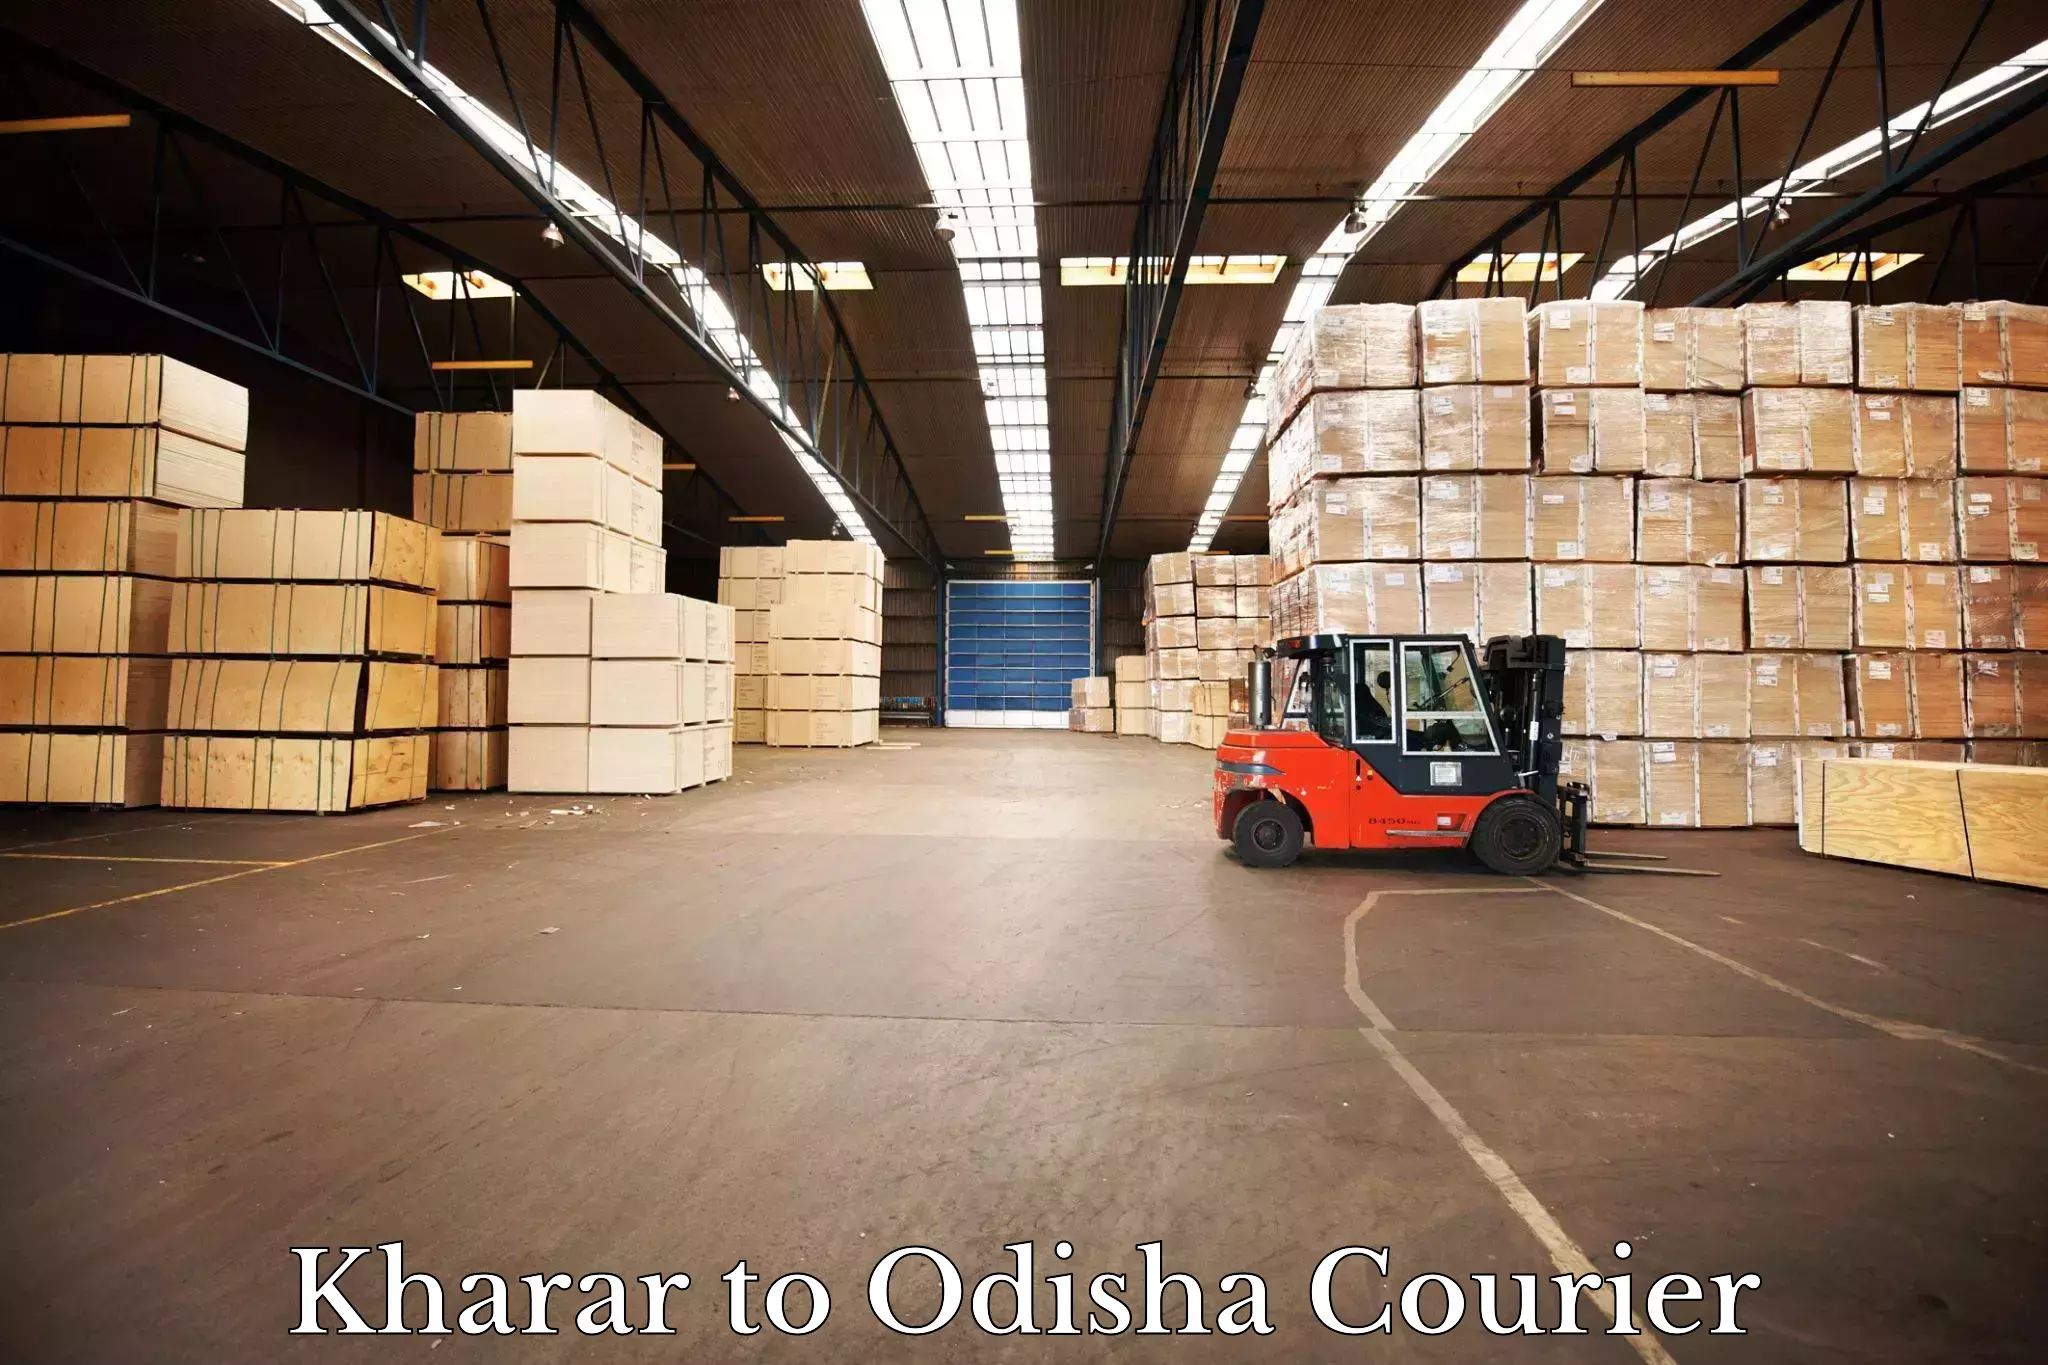 24-hour courier service Kharar to Pottangi